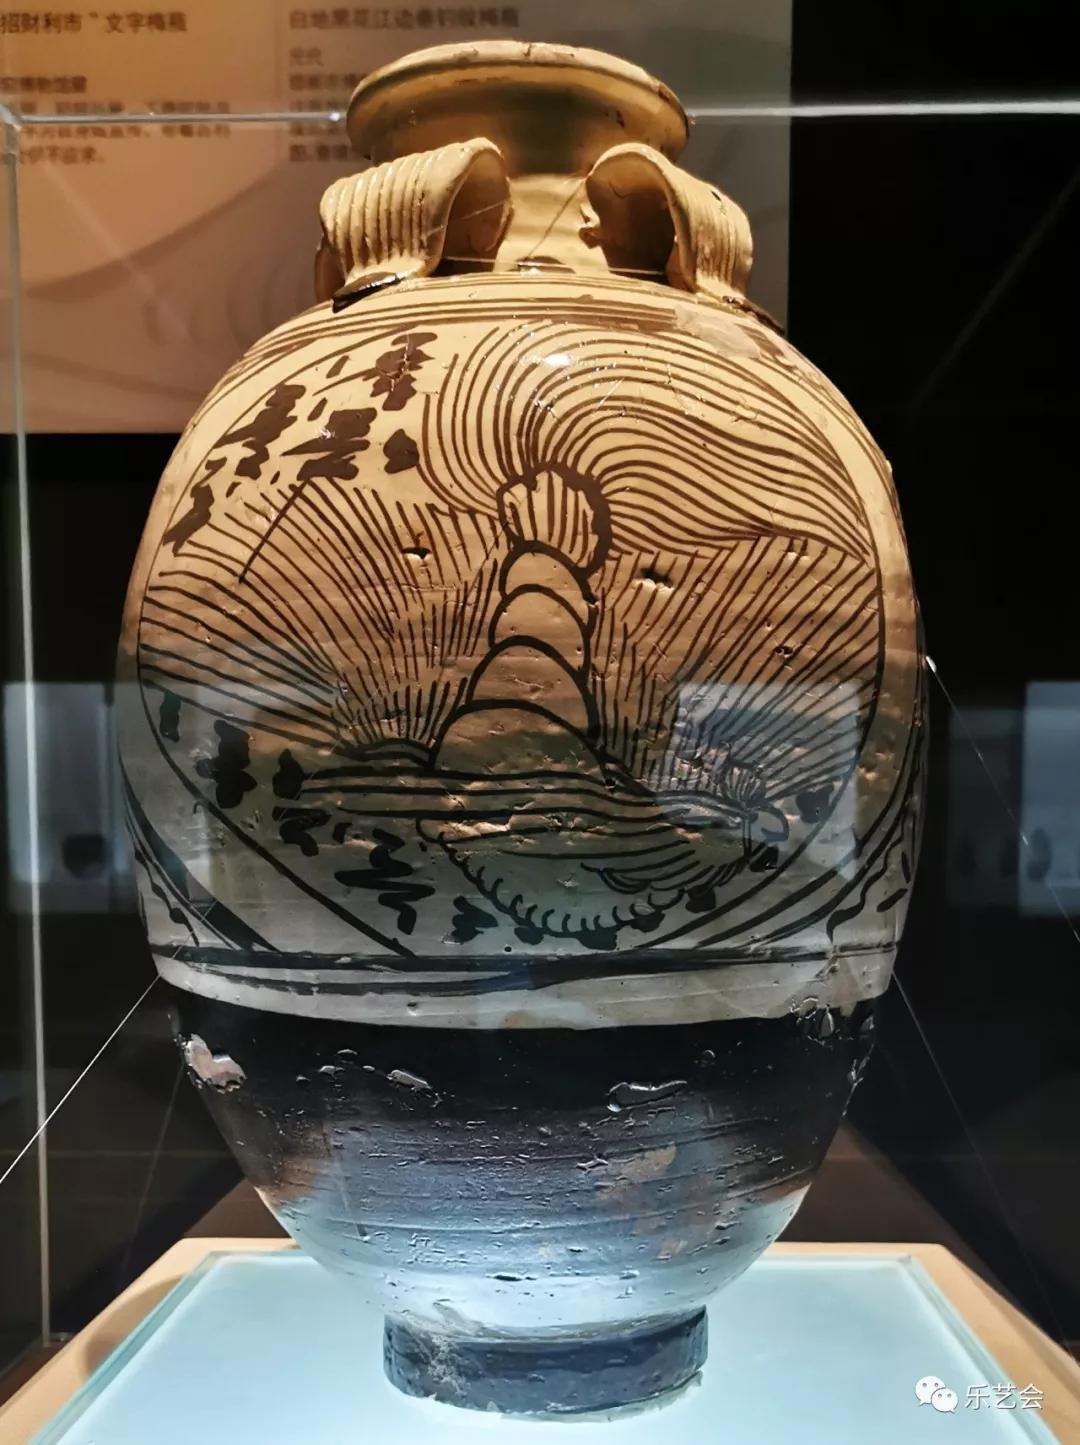 邯郸市博物馆中国磁州窑瓷器宋金元篇敕勒青铜分享